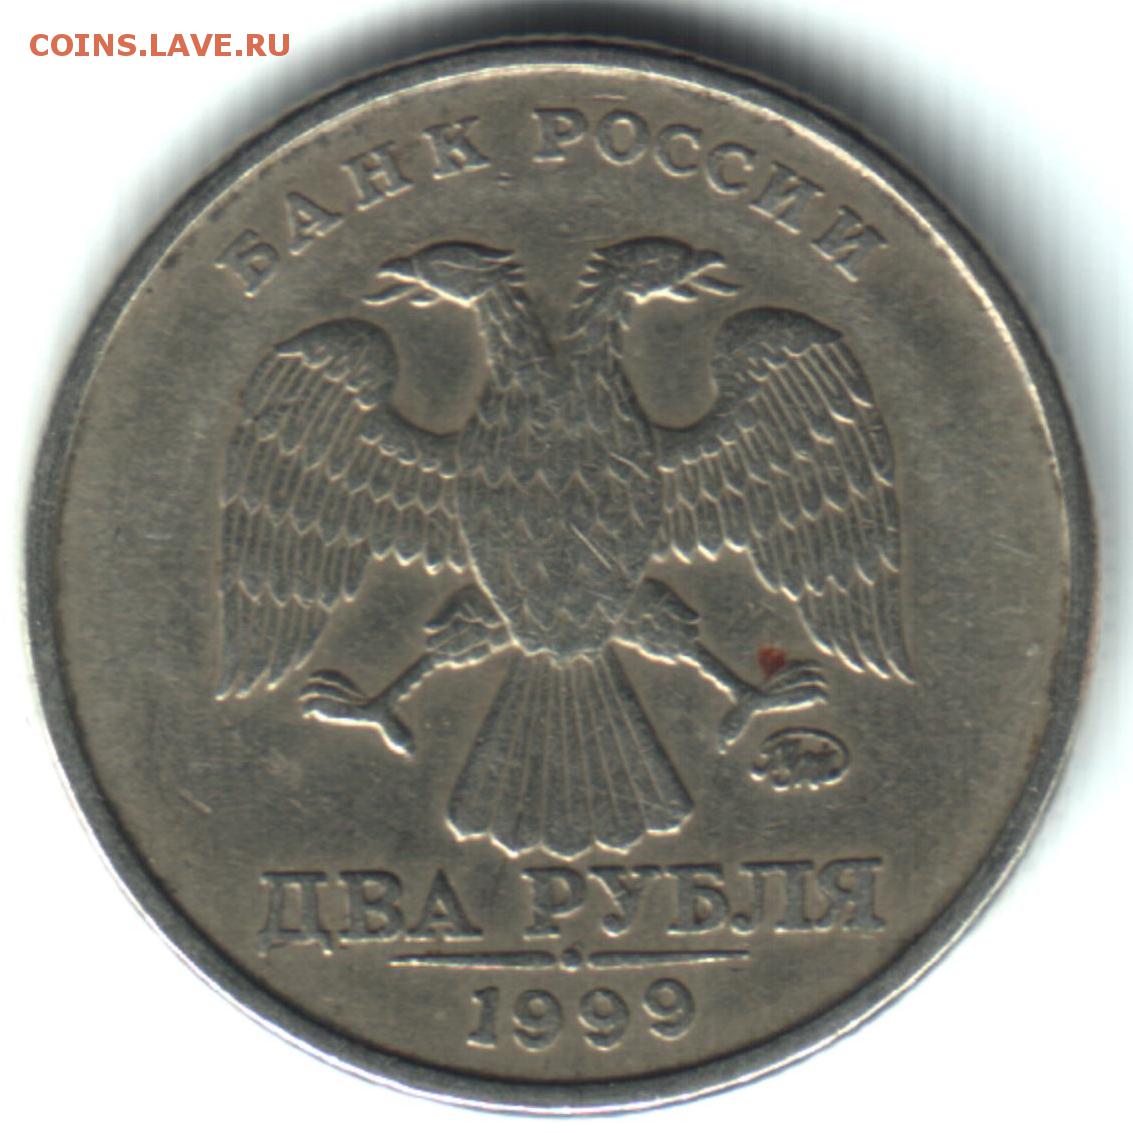 Рубль 23 12. СПДМ монеты. 10 Рублей 1999. Монета 5 рублей 1999 года СПМД. Как выглядит СПДМ на монетах.